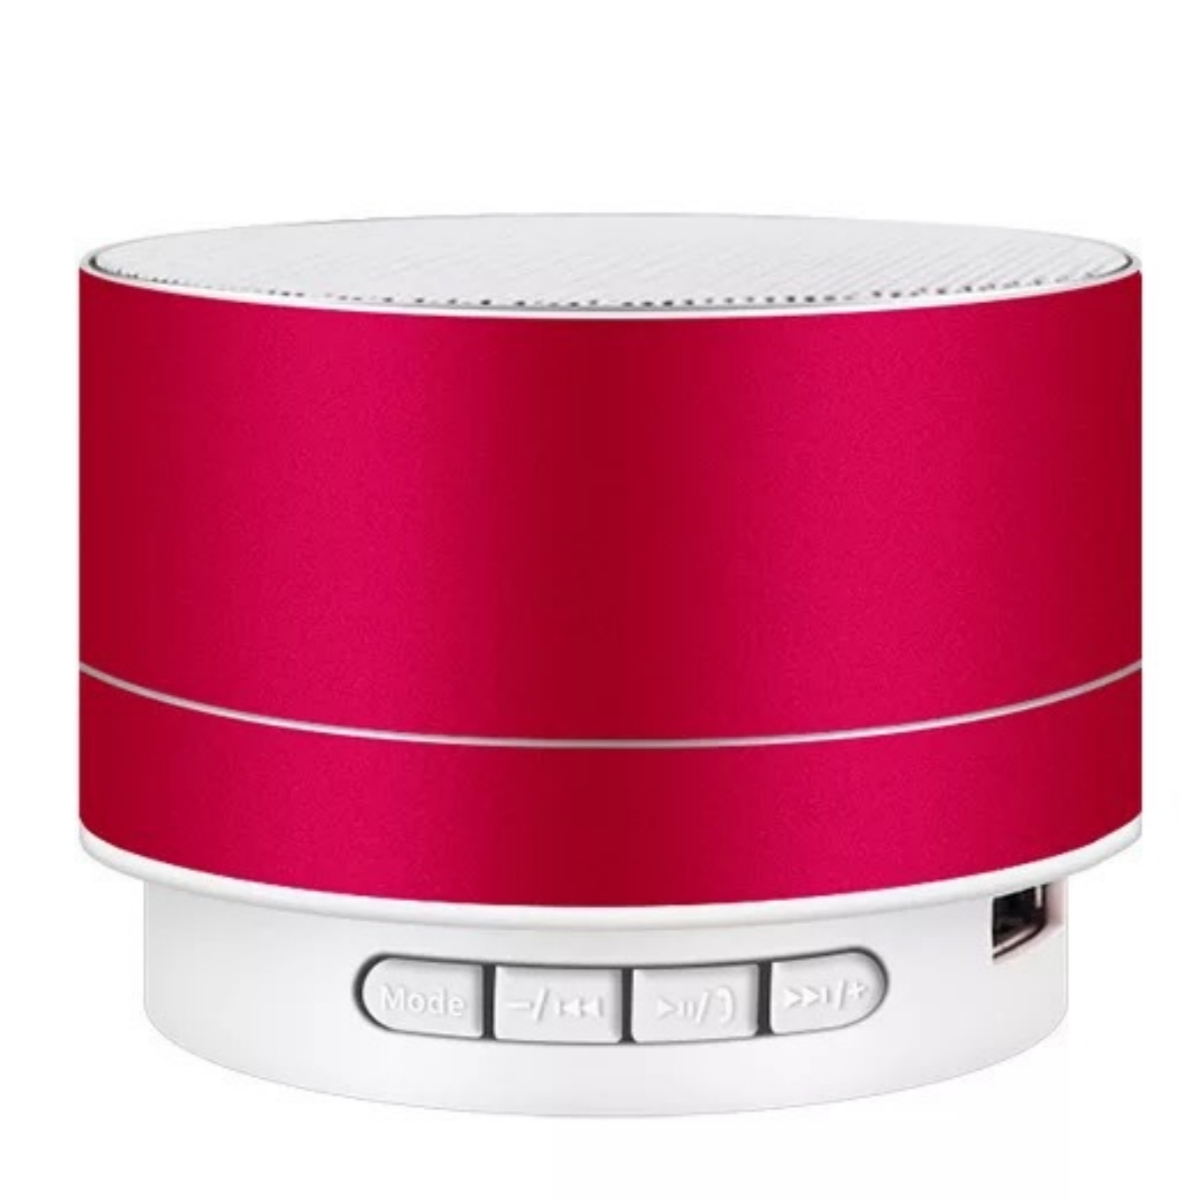 SHAOKE Bluetooth-Lautsprecher - Lautsprecher, Tragbar Kompakt 360° Hochwertig Rot Surround-Sound Bluetooth